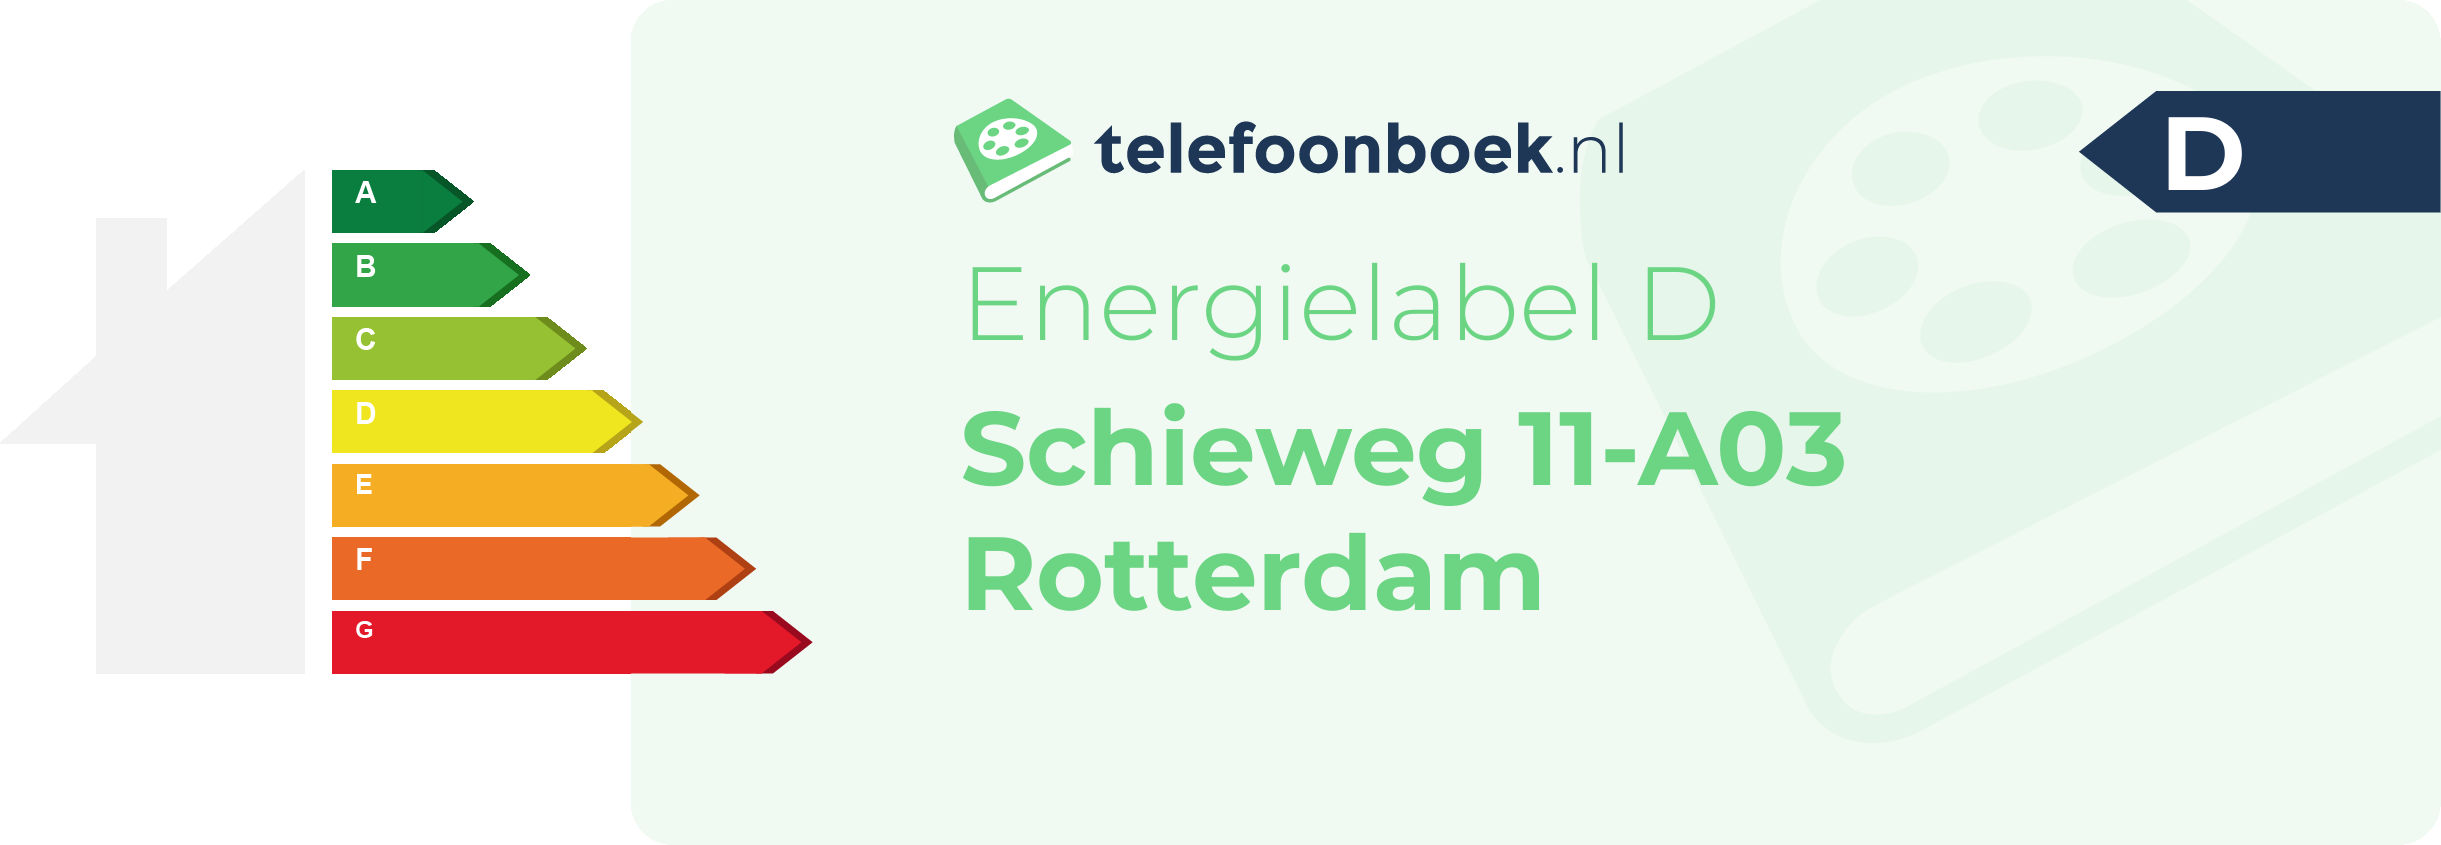 Energielabel Schieweg 11-A03 Rotterdam